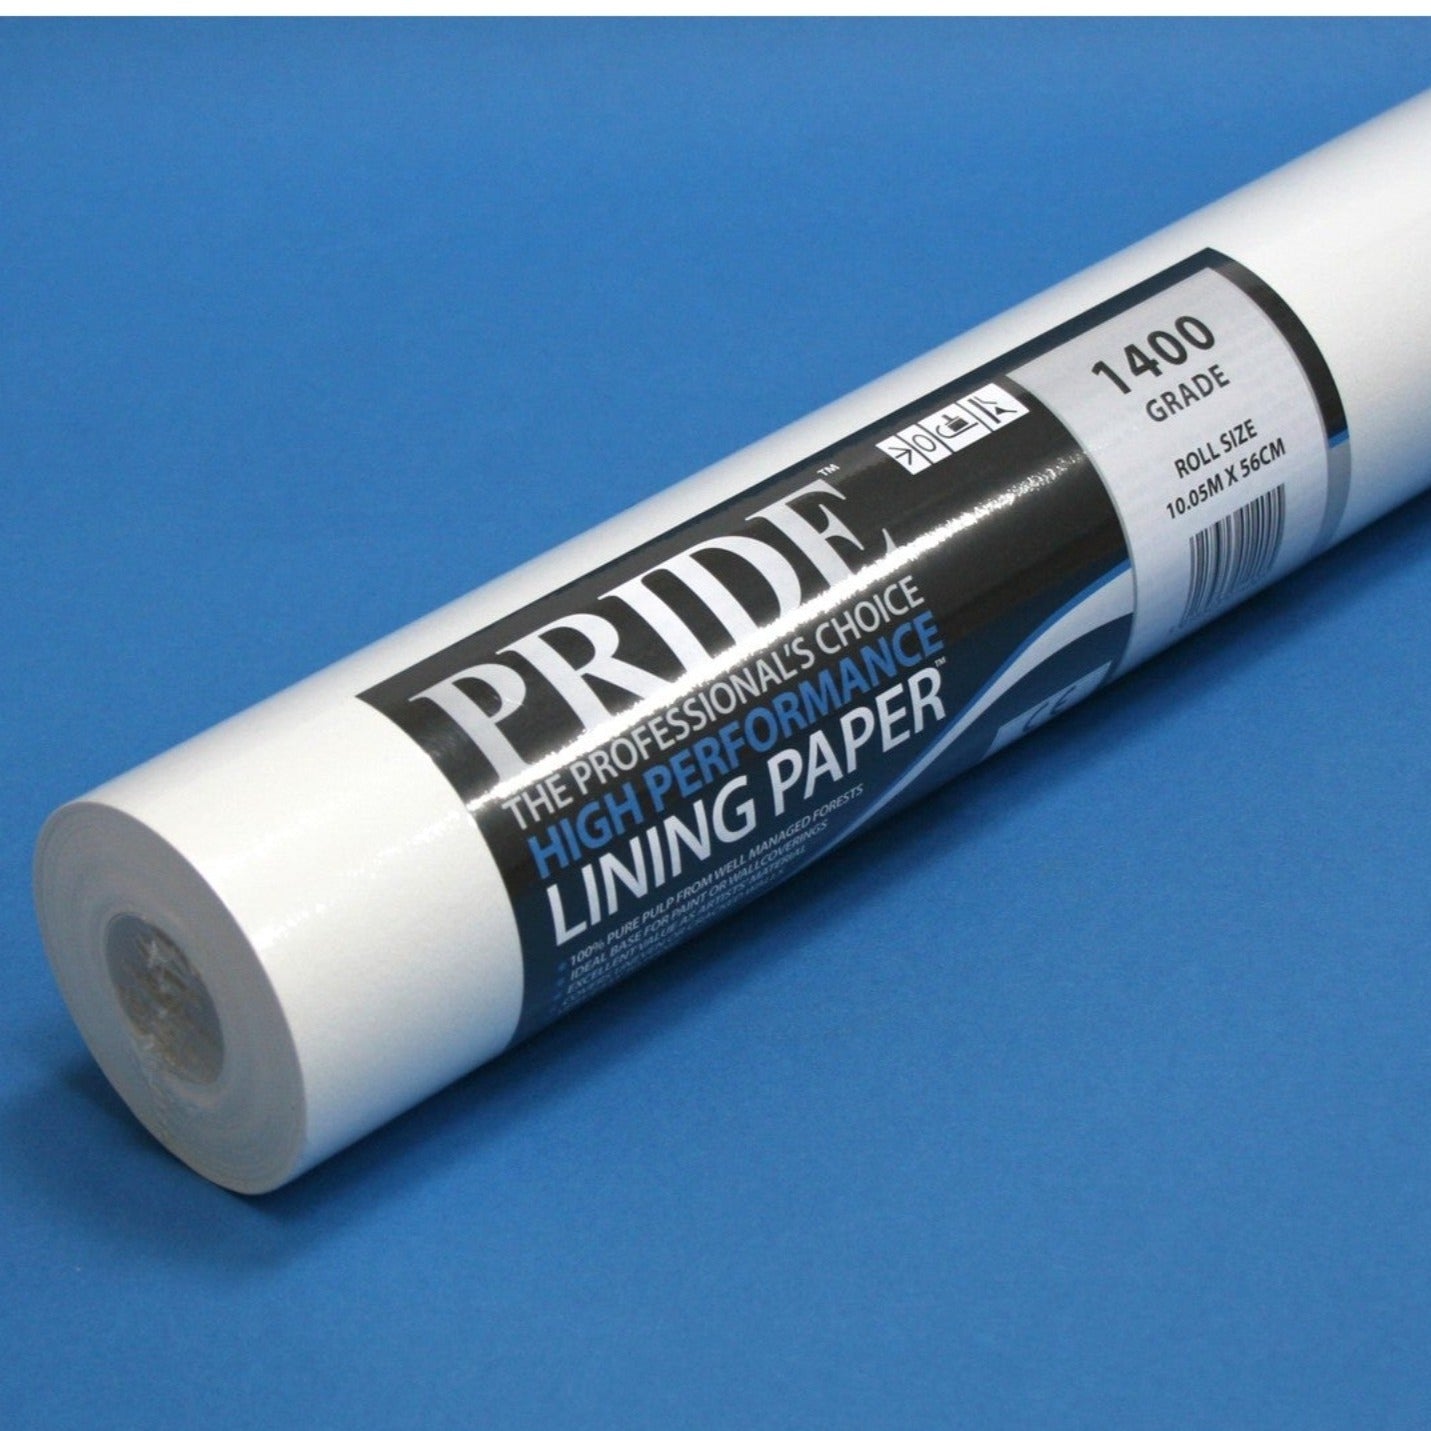 Pride 1400 Grade Lining Paper Wallpaper